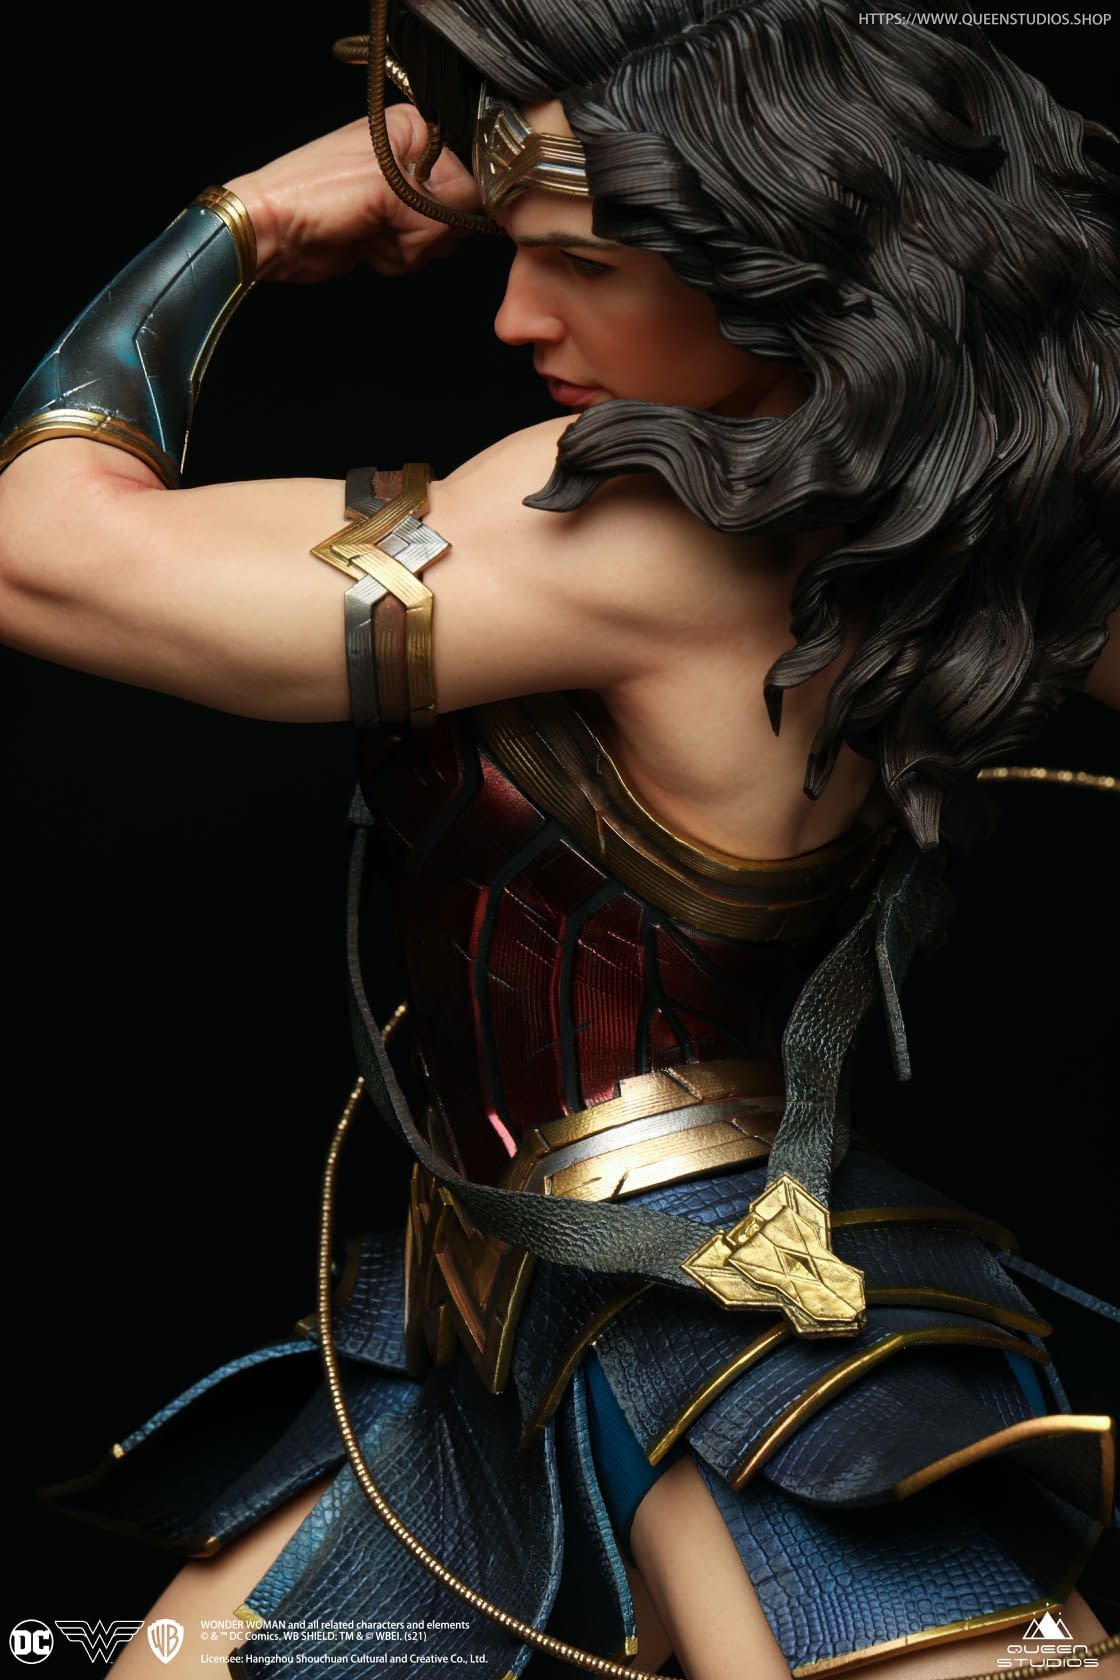 DC Comics Wonder Woman Statue - Queen Studios (Official)